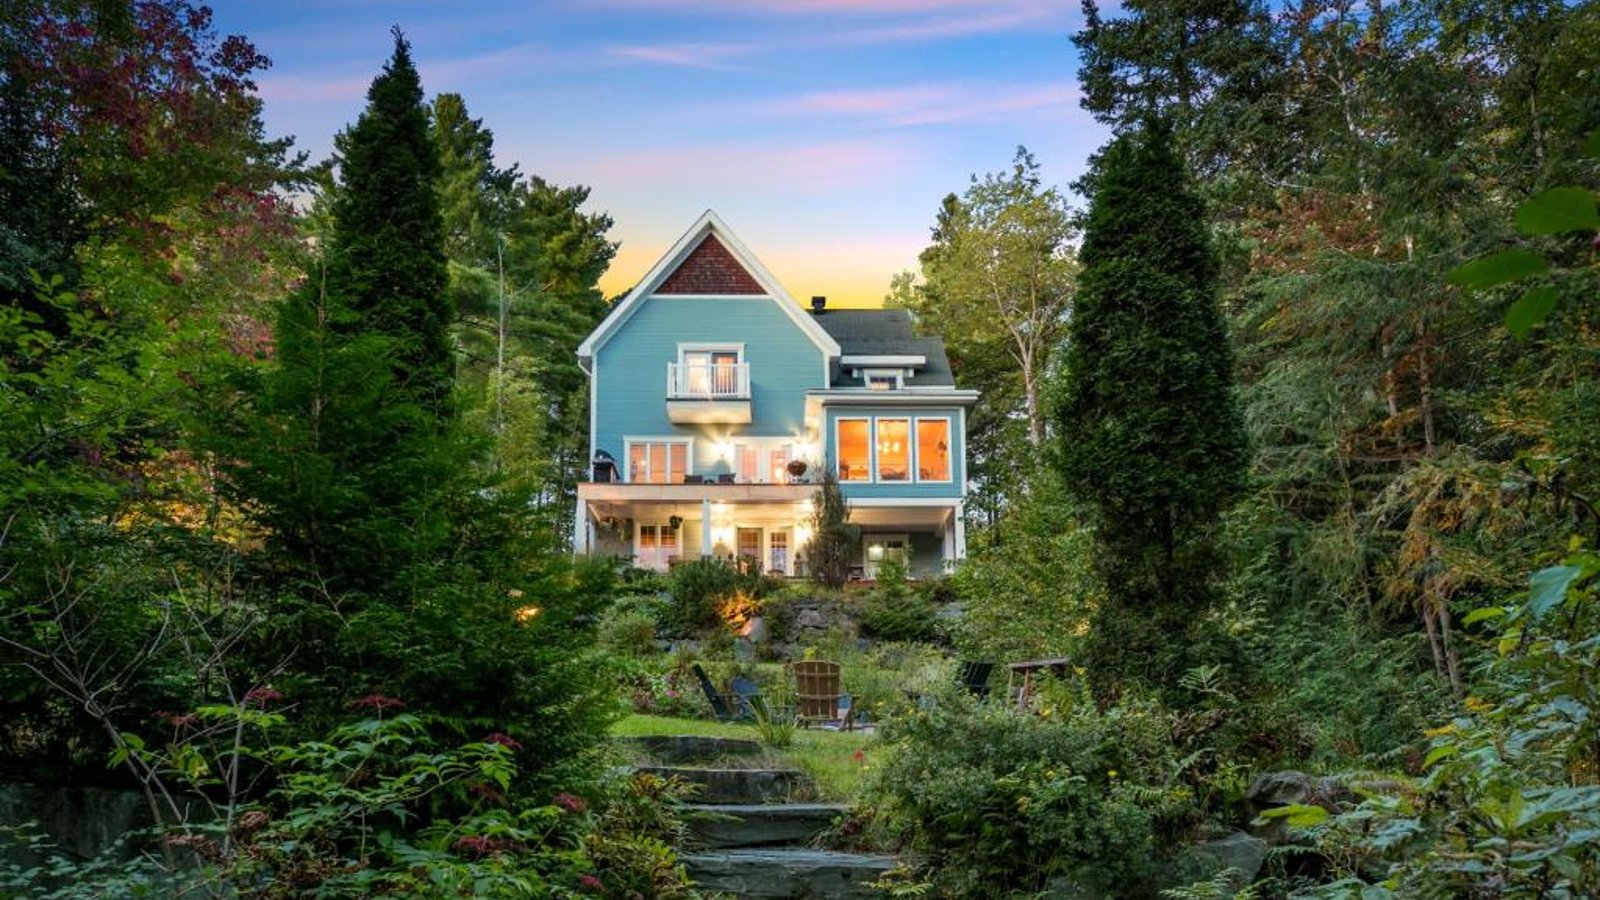 La sérénité vous attend dans ce cottage champêtre-chic niché dans un écrin de verdure surplombant un lac écologique